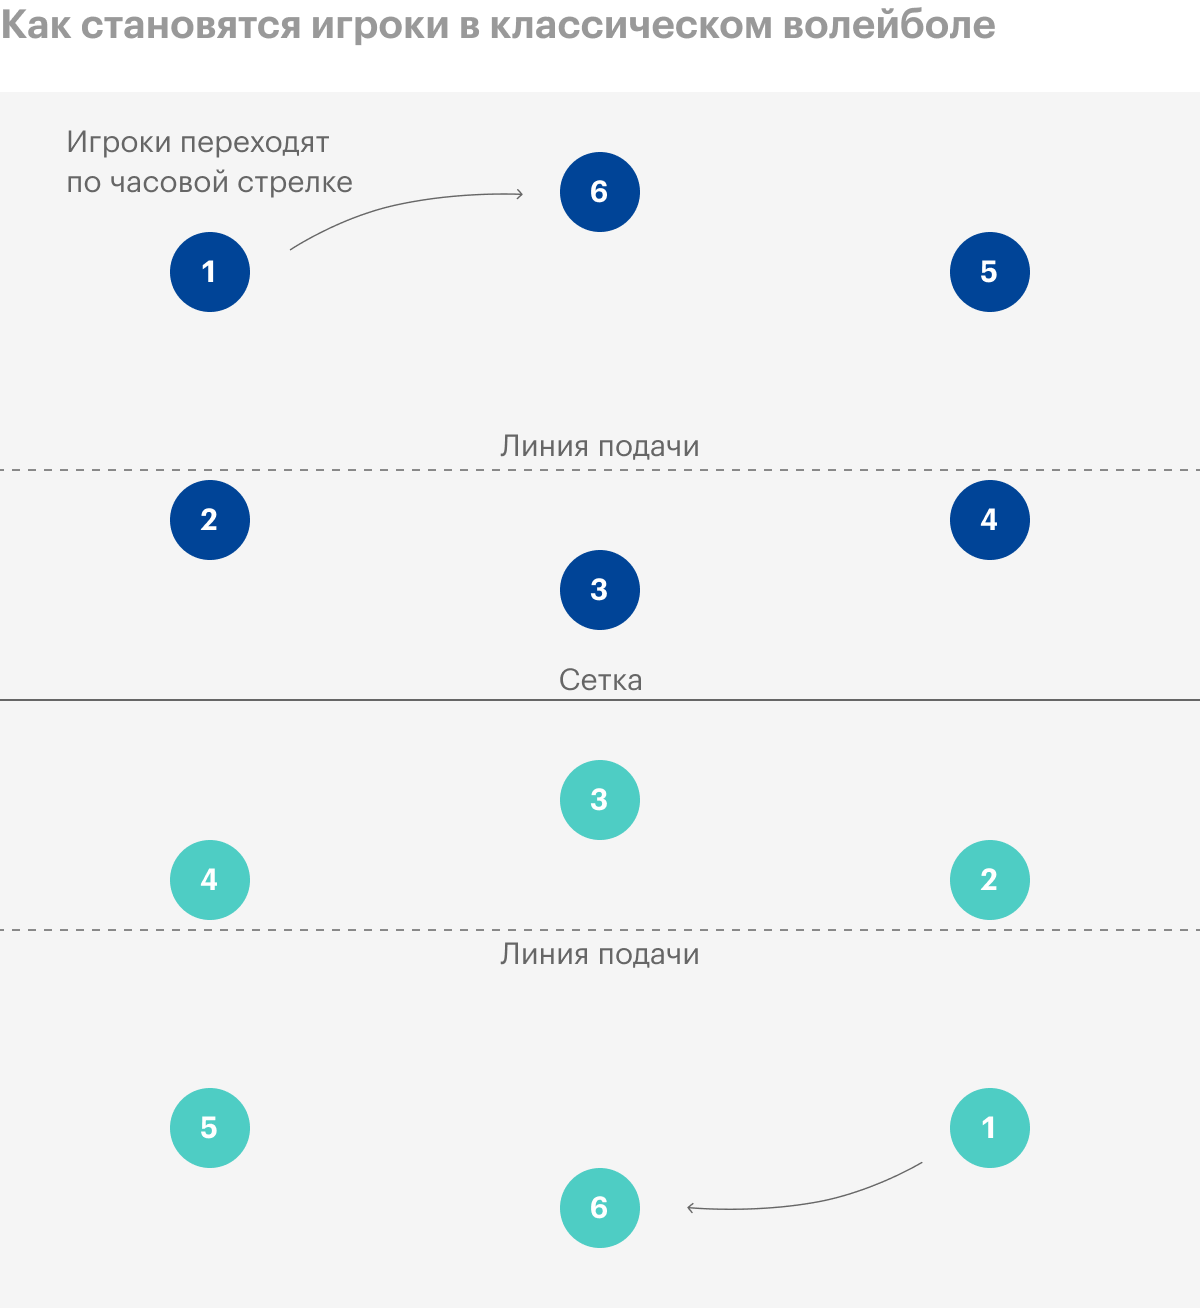 Игроки 2, 3 и 4 — передняя линия, 1, 6 и 5 — задняя. Подает мяч игрок 1. Он может сделать это из любого места за линией подачи. Источник: wikipedia.org